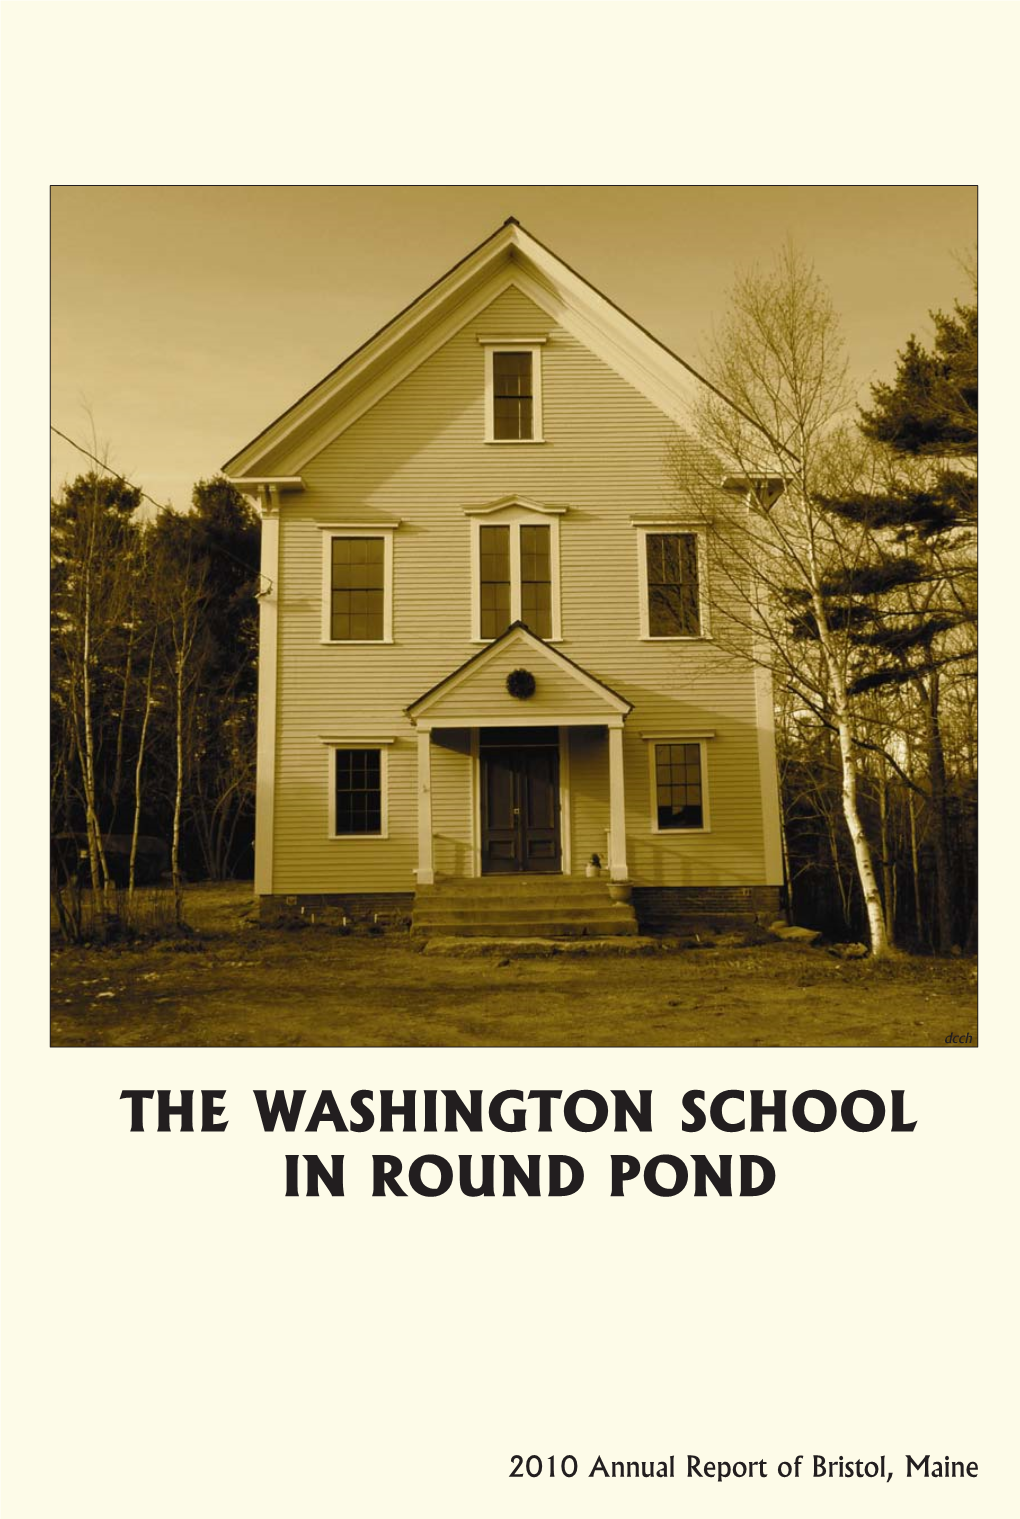 The Washington School in Round Pond